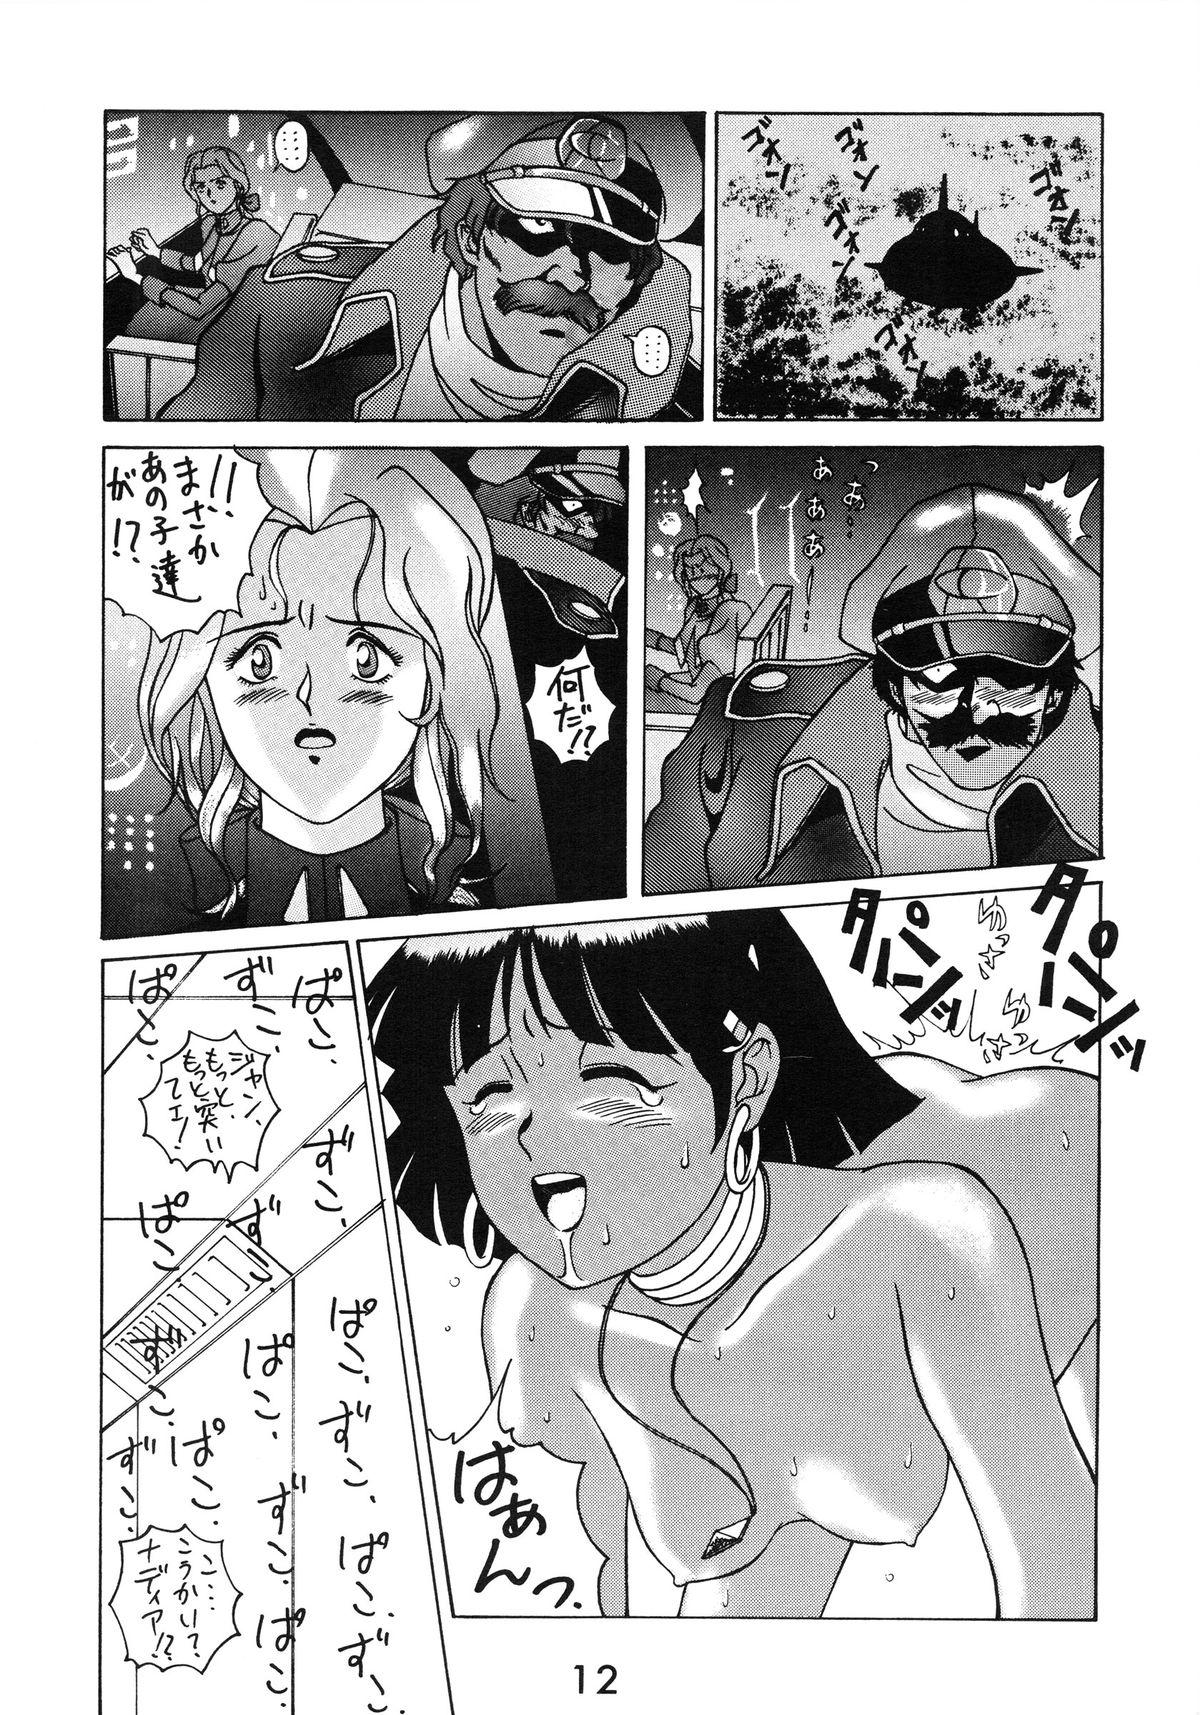 Free Blowjob Zenmai Tamarizuke - Fushigi no umi no nadia Group - Page 12